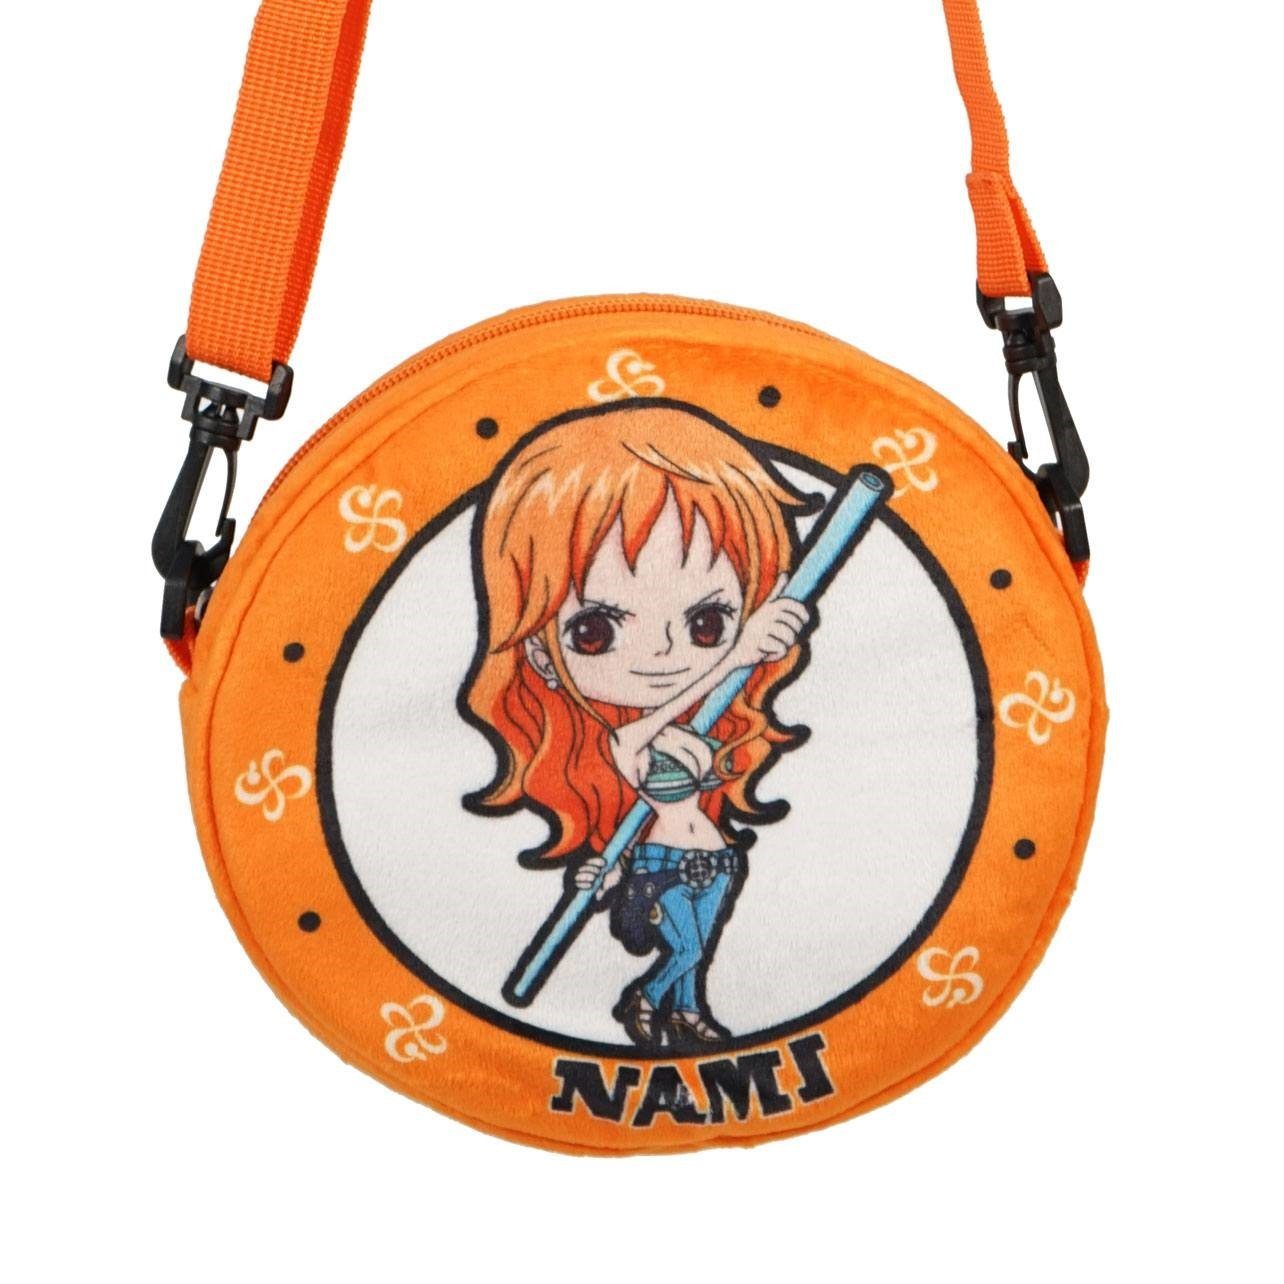 Sakami Merchandise Umhängetasche 21 21 cm Schultertasche Handtasche x Nami Freizeittasche One Piece